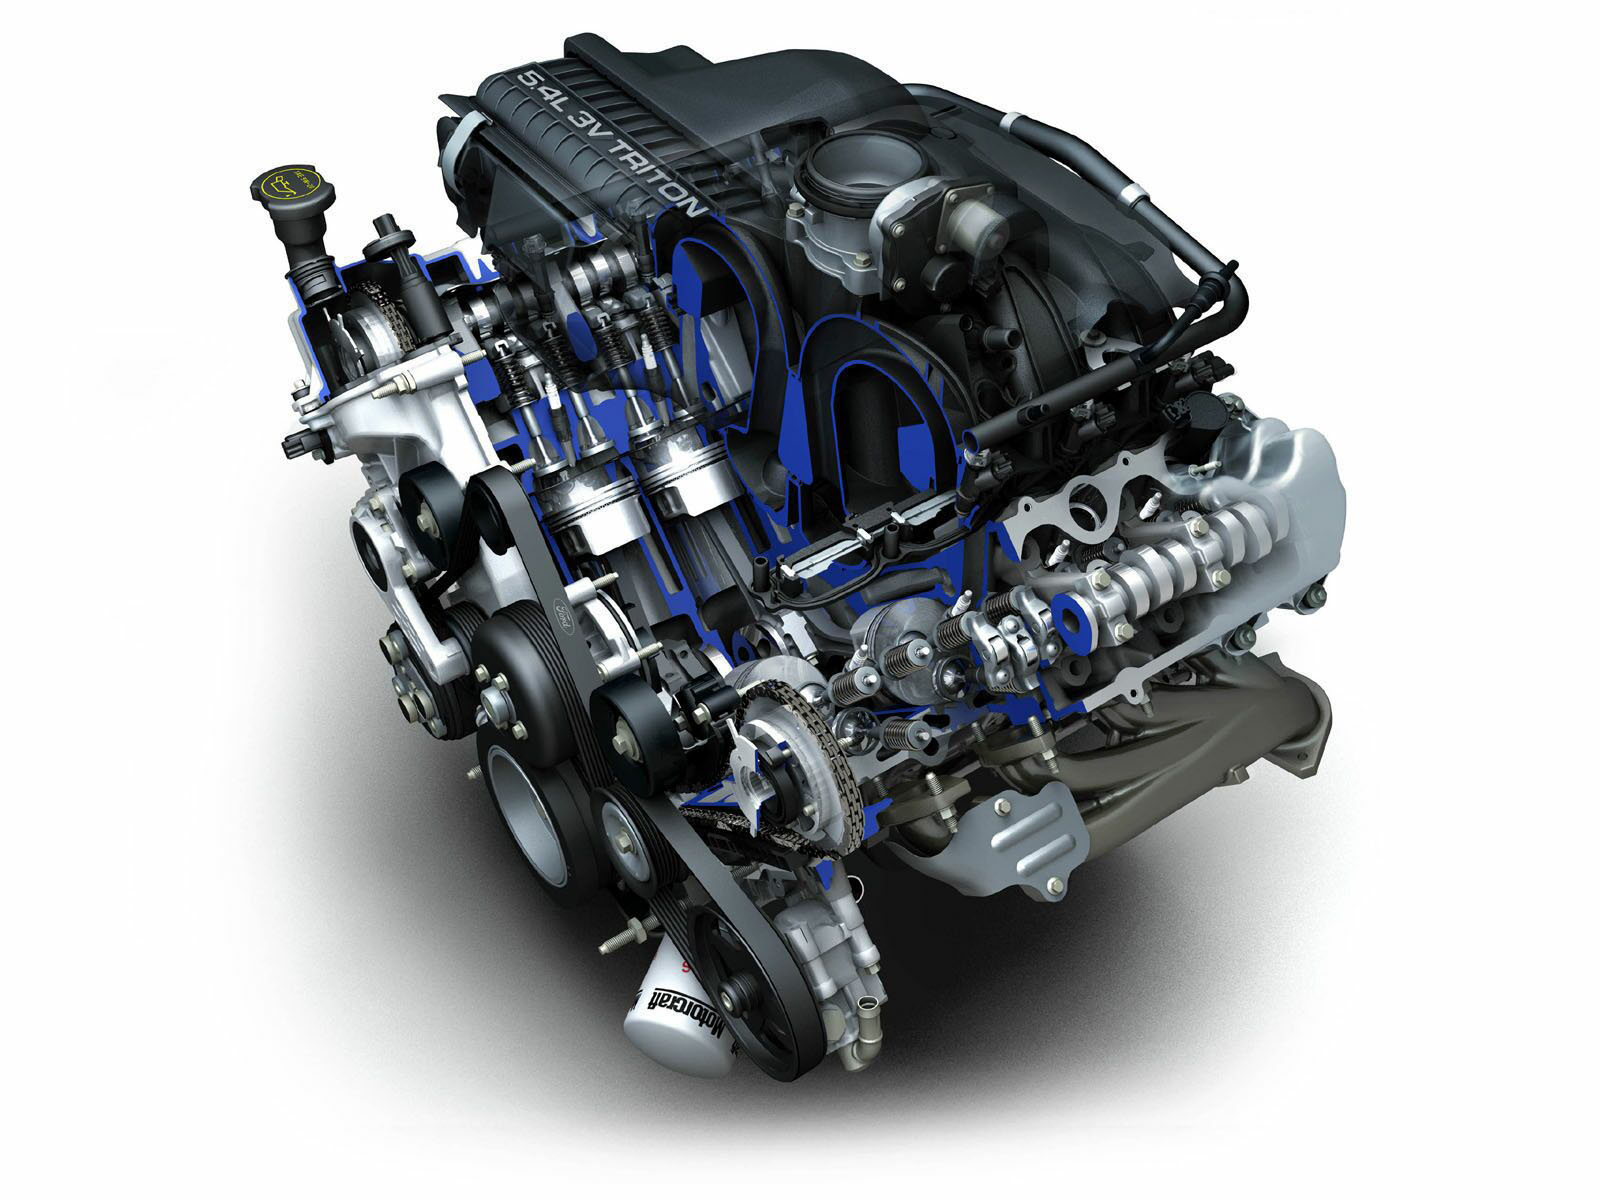 Двигатель на автомобиле является. Ford f150 мотор. Двигатель автомобиля. Бензиновый ДВС. Бензиновый двигатель внутреннего сгорания.